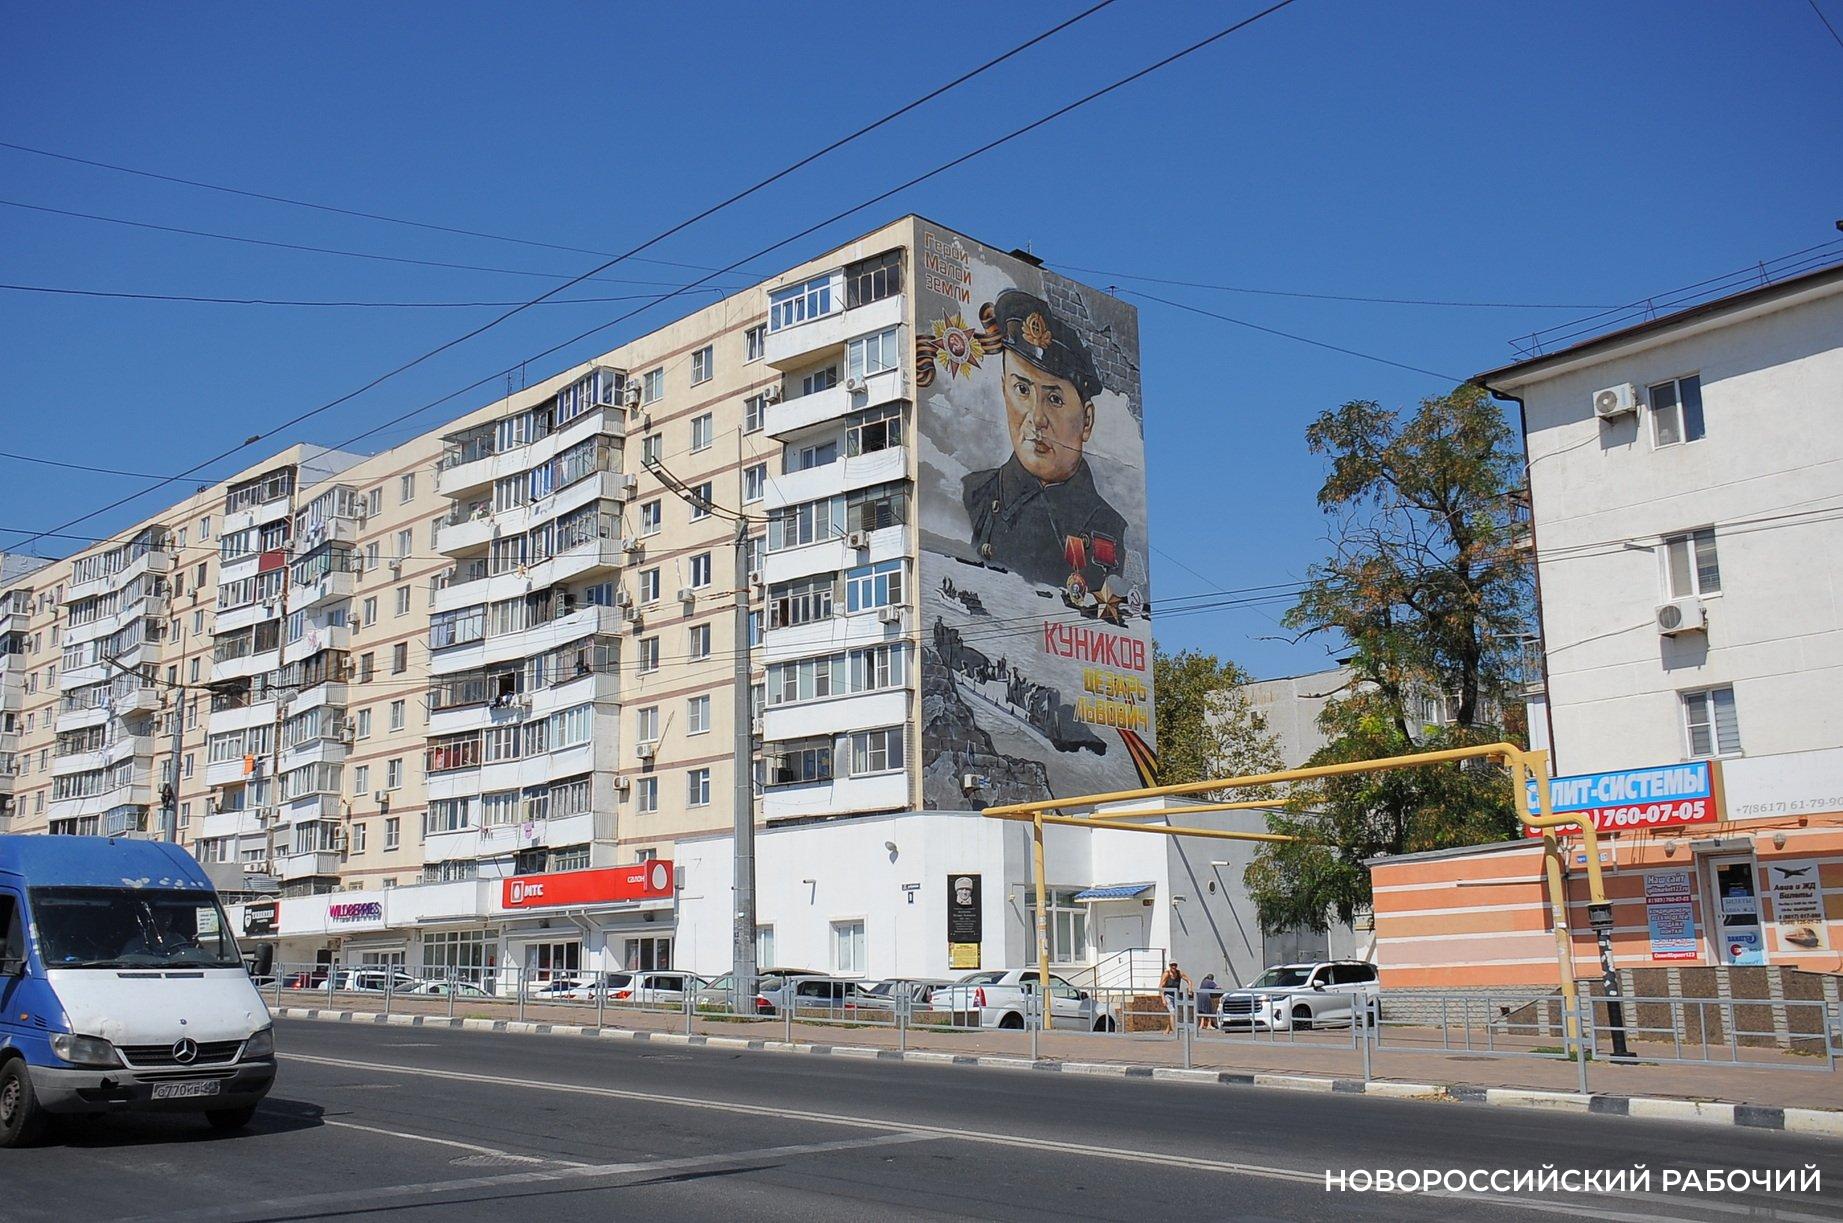 В Новороссийске жители просят ко Дню города привести в порядок памятник его освободителя